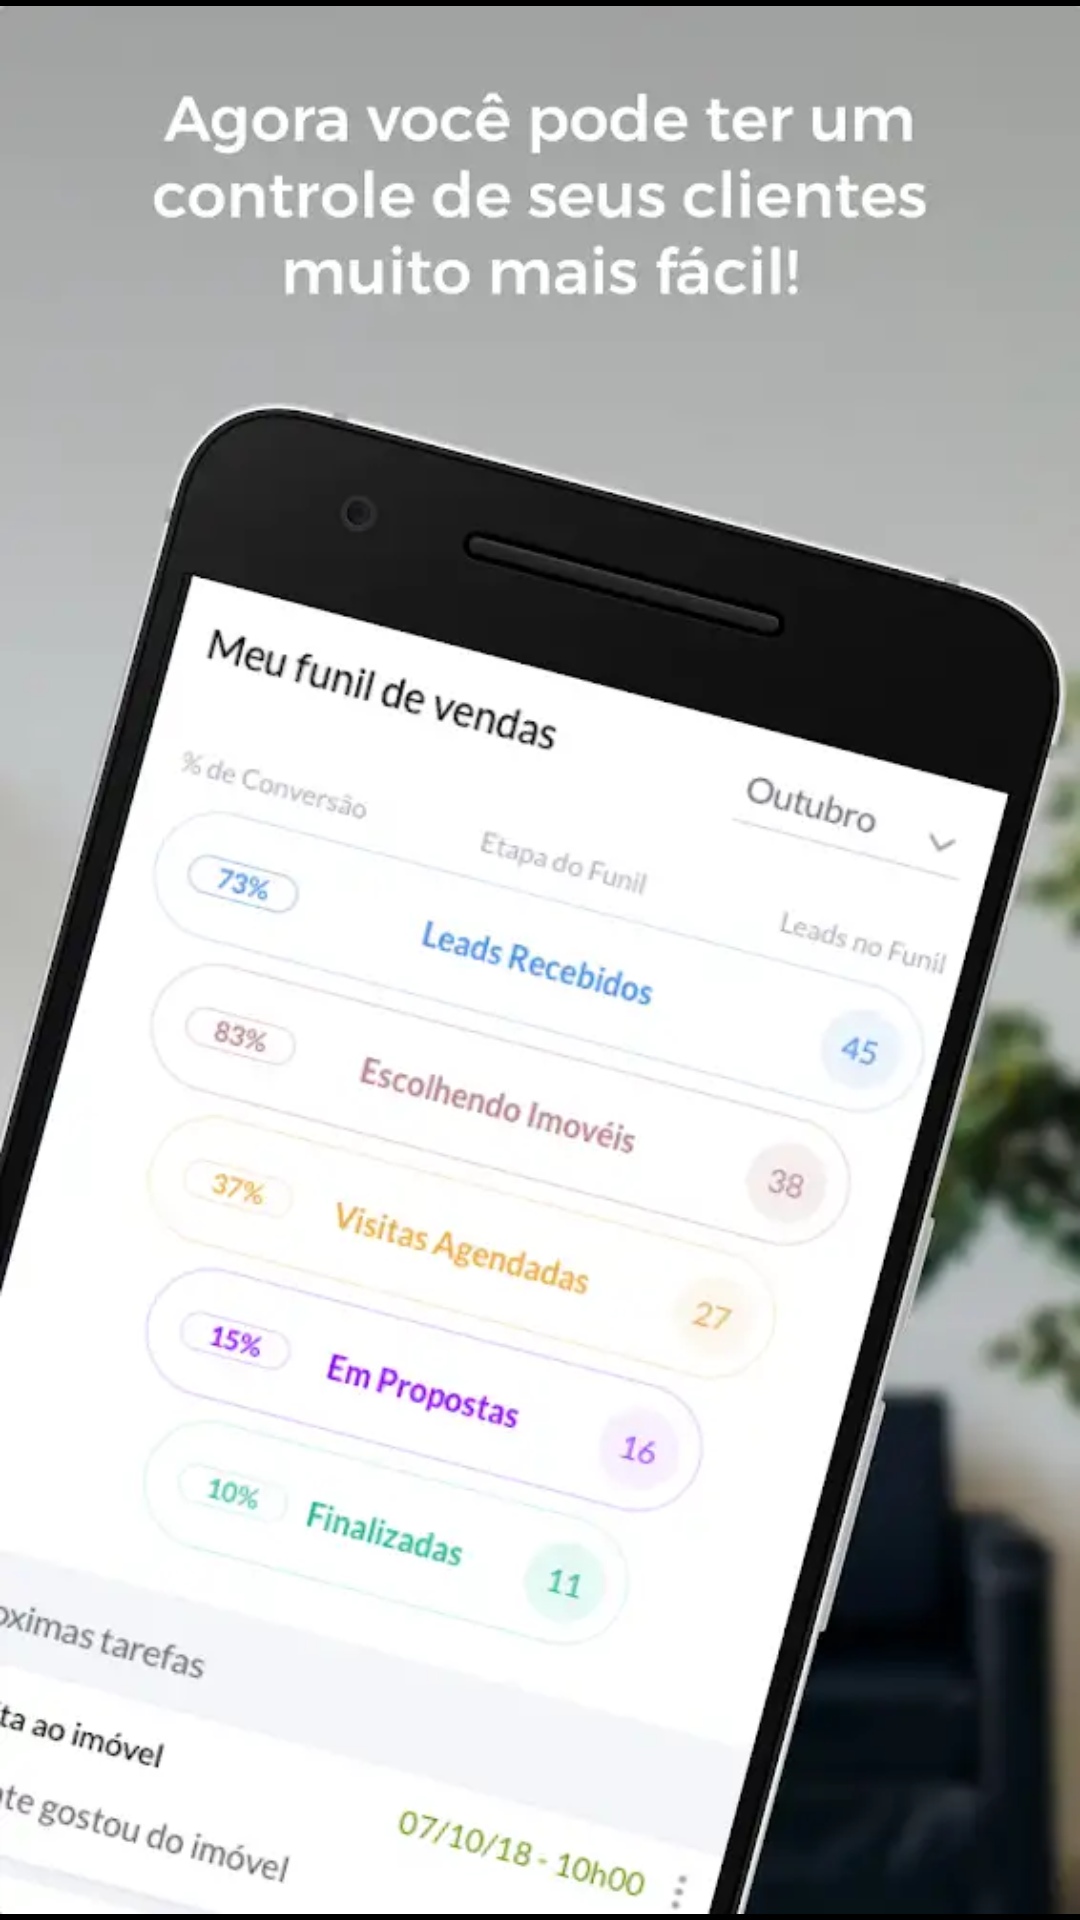 Loopimóveis.com lança aplicativo que facilita a venda de imóveis novos